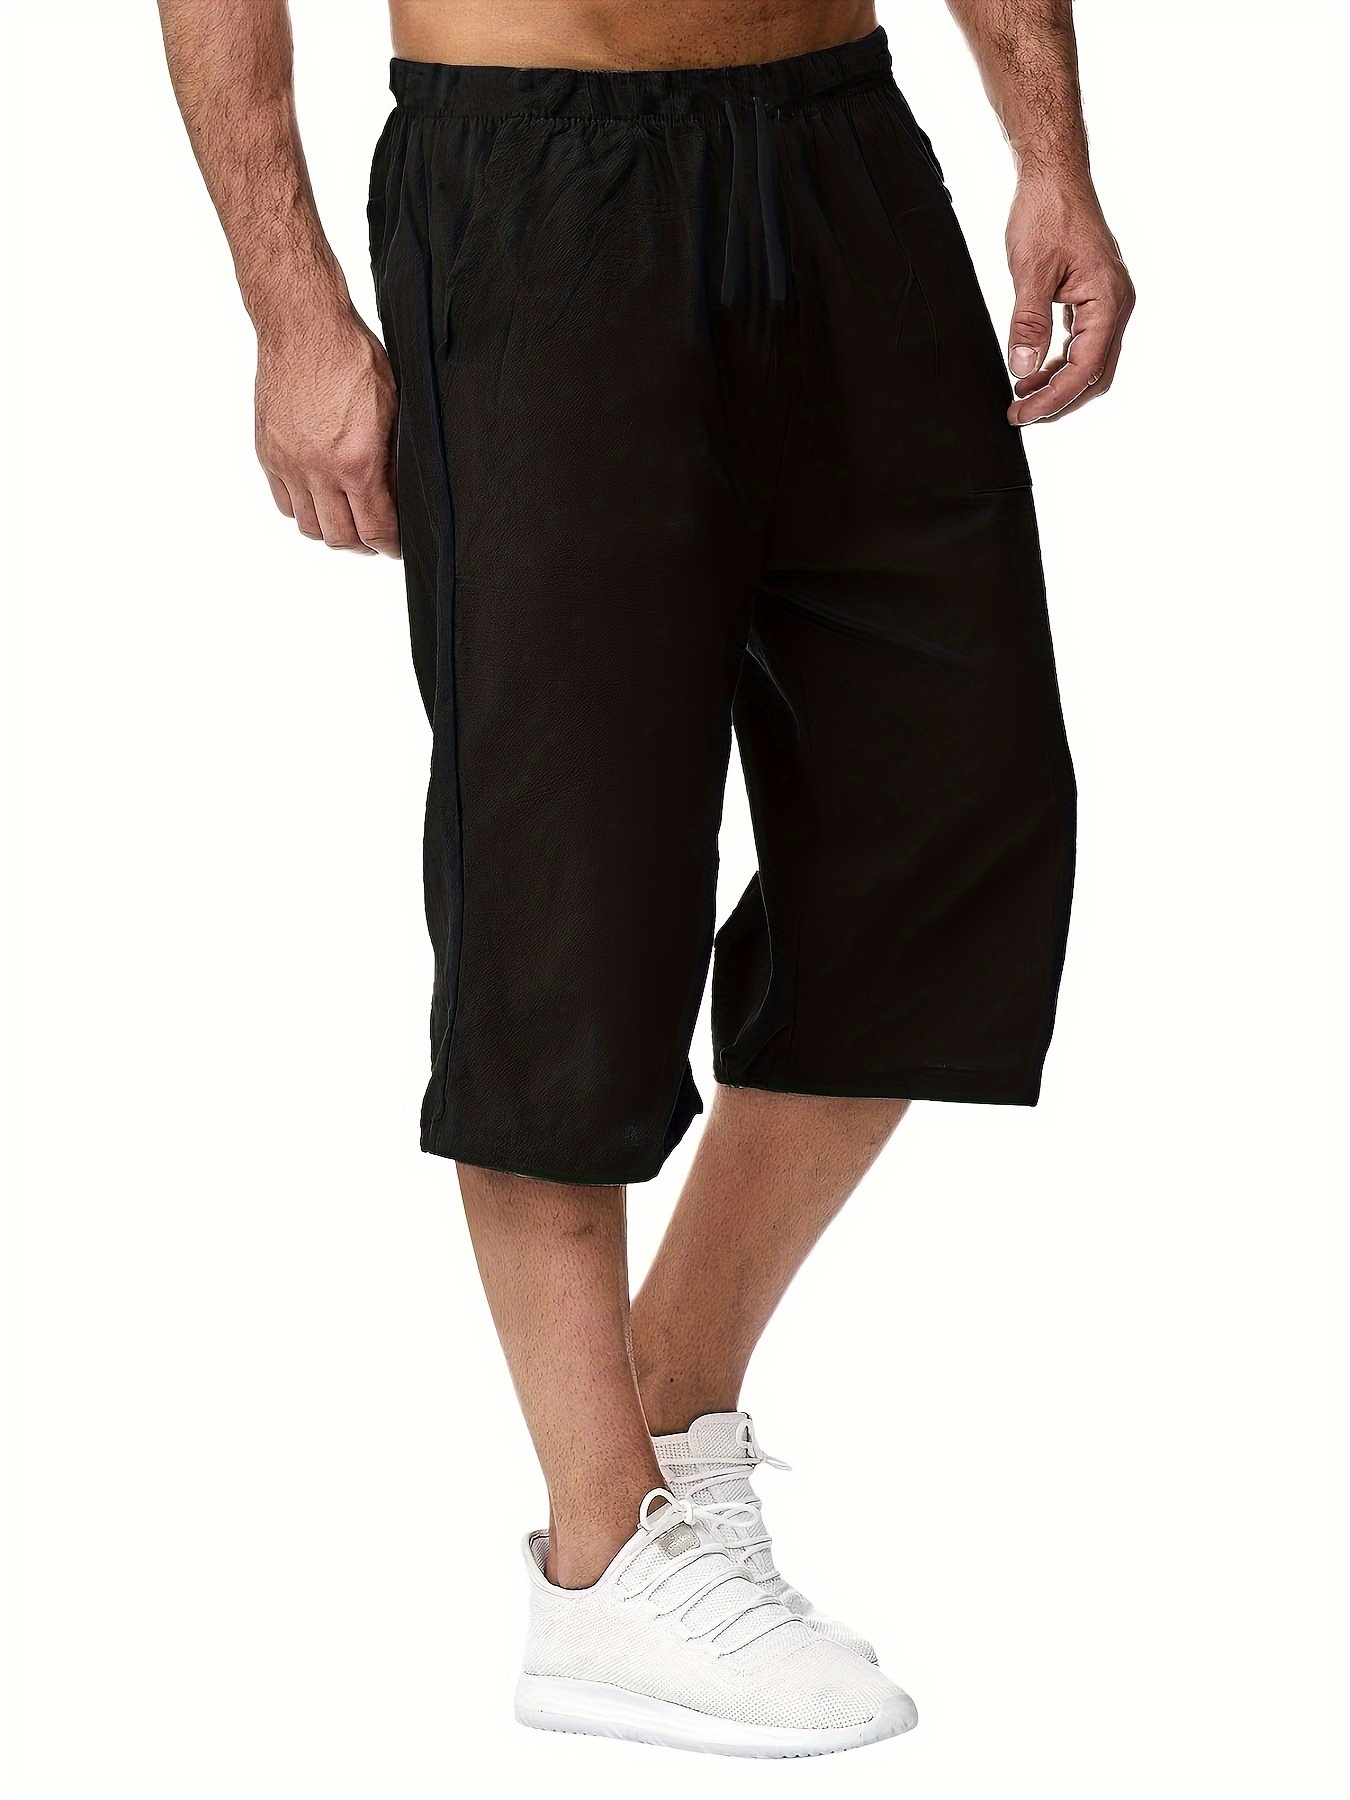 Plus Size Shorts Hombres Sólidos Transpirables Secado Rápido